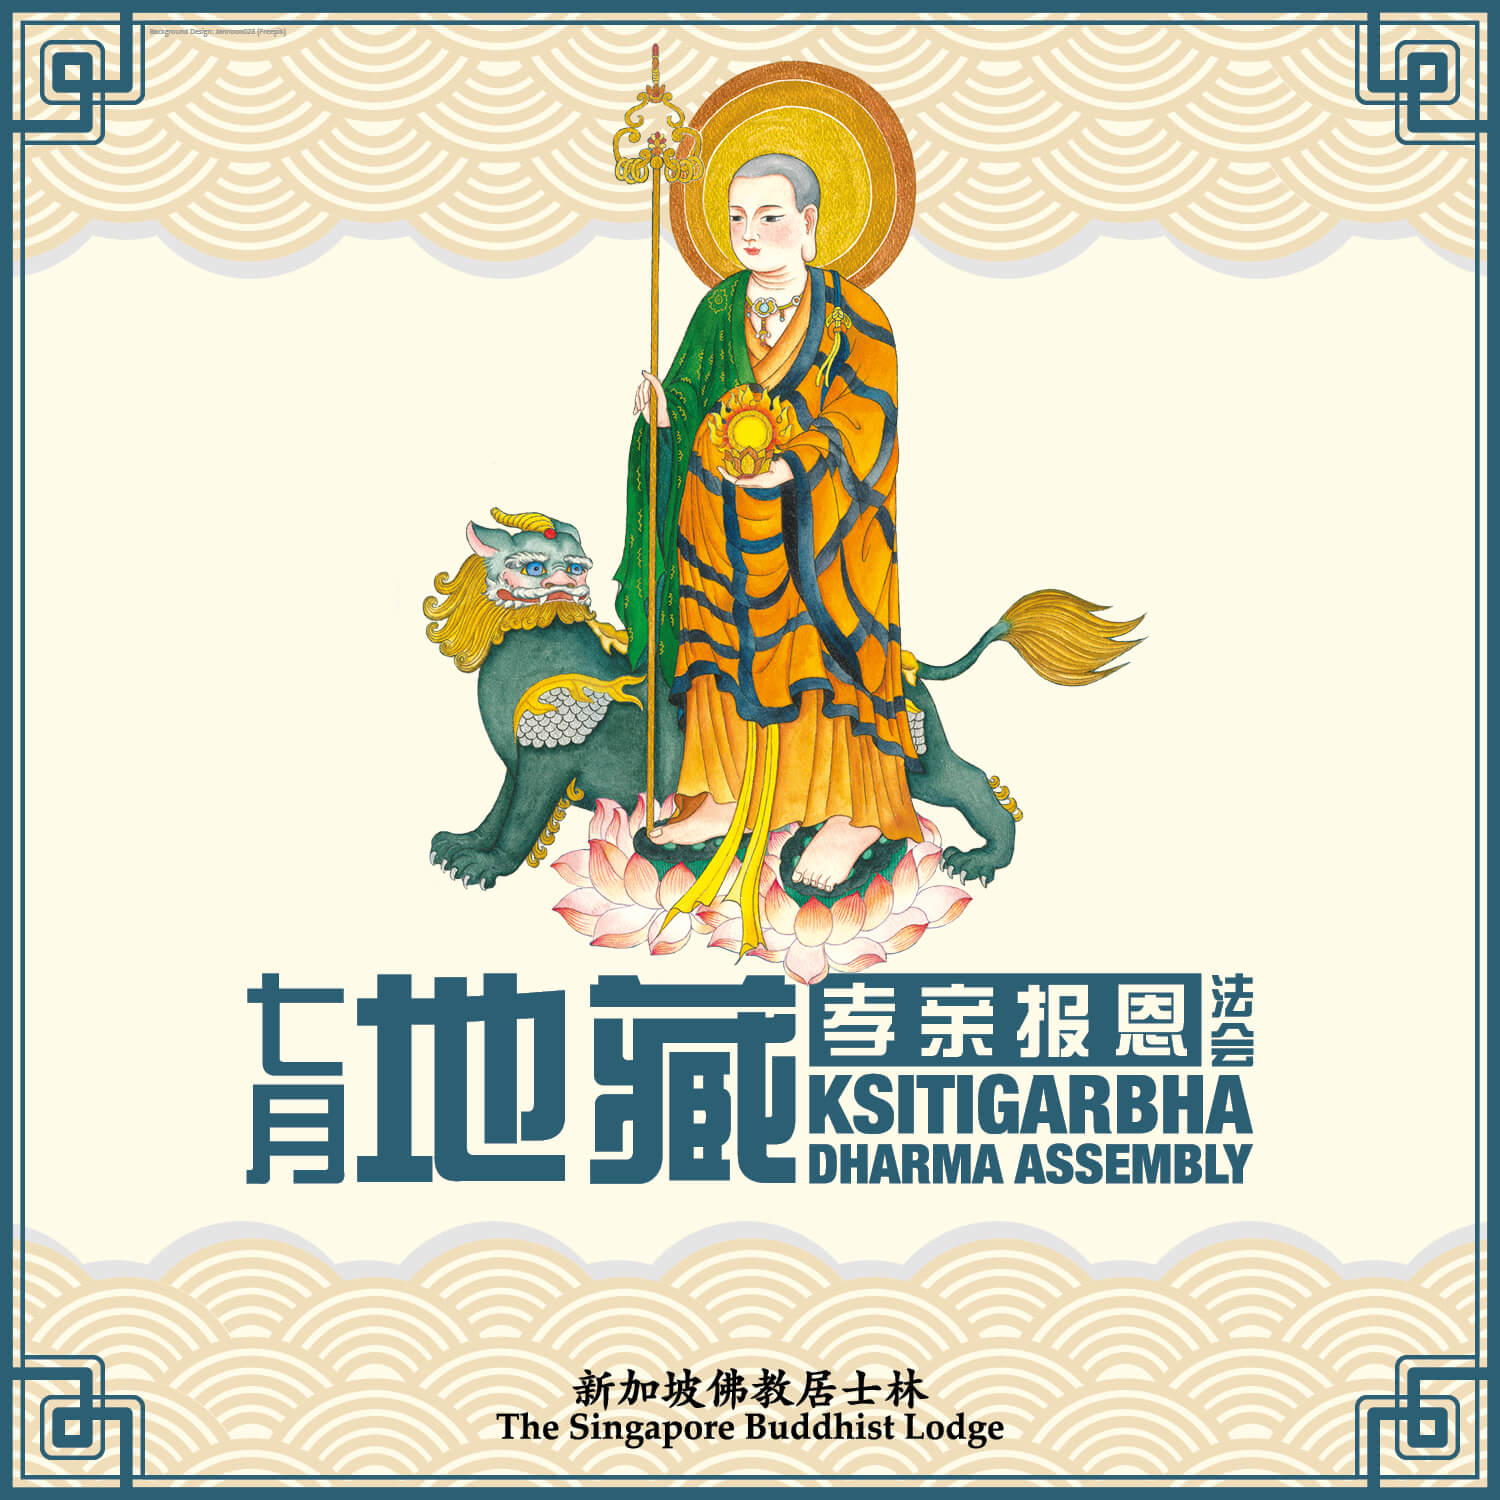 地藏法会 Ksitigarbha Dharma Assembly